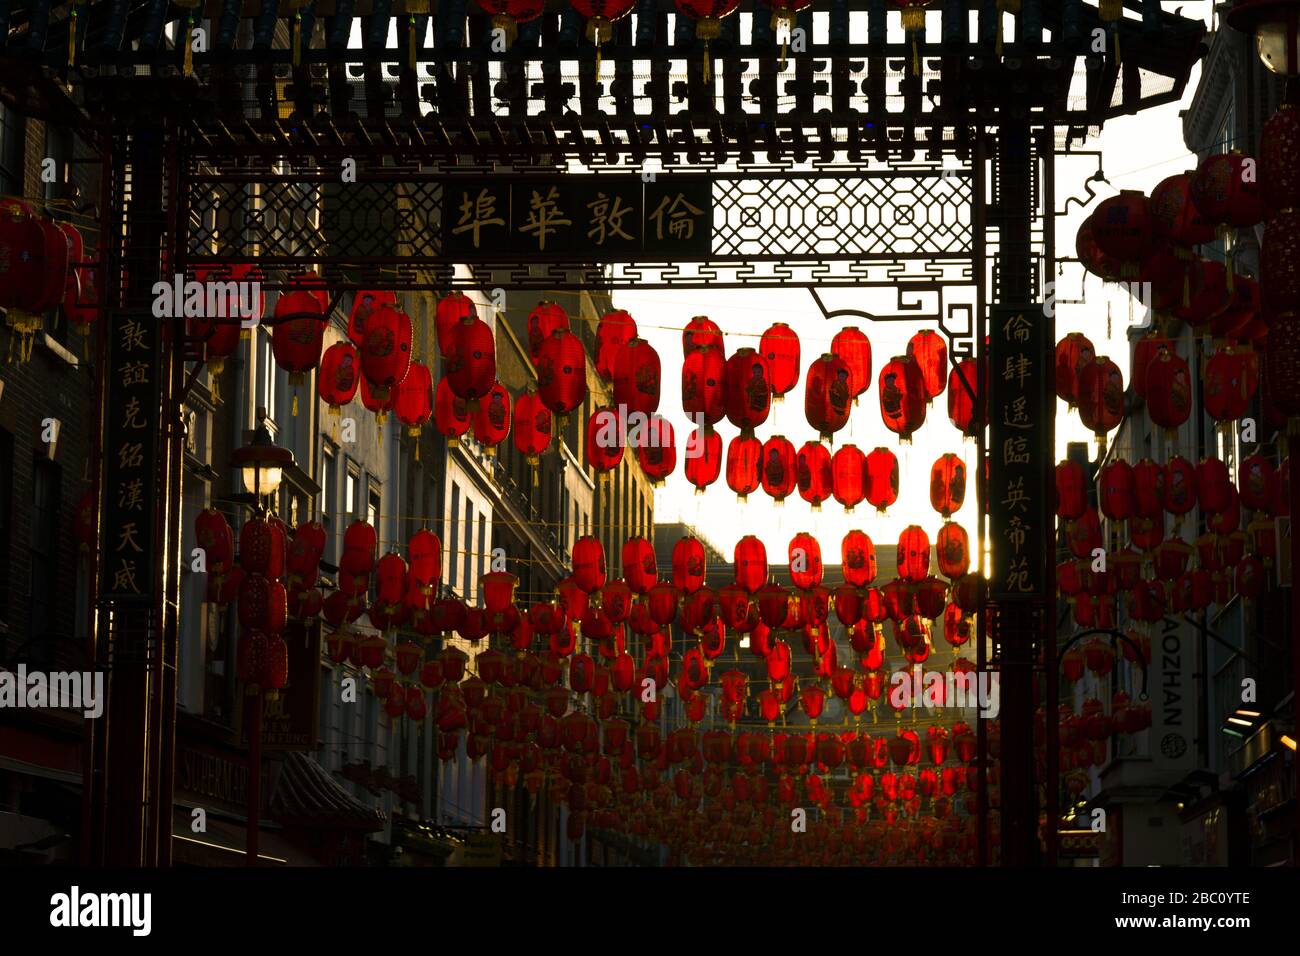 Lanternes chinoises pour la nouvelle année chinoise, Chinatown, Gerrard Street, Londres, Royaume-Uni Banque D'Images